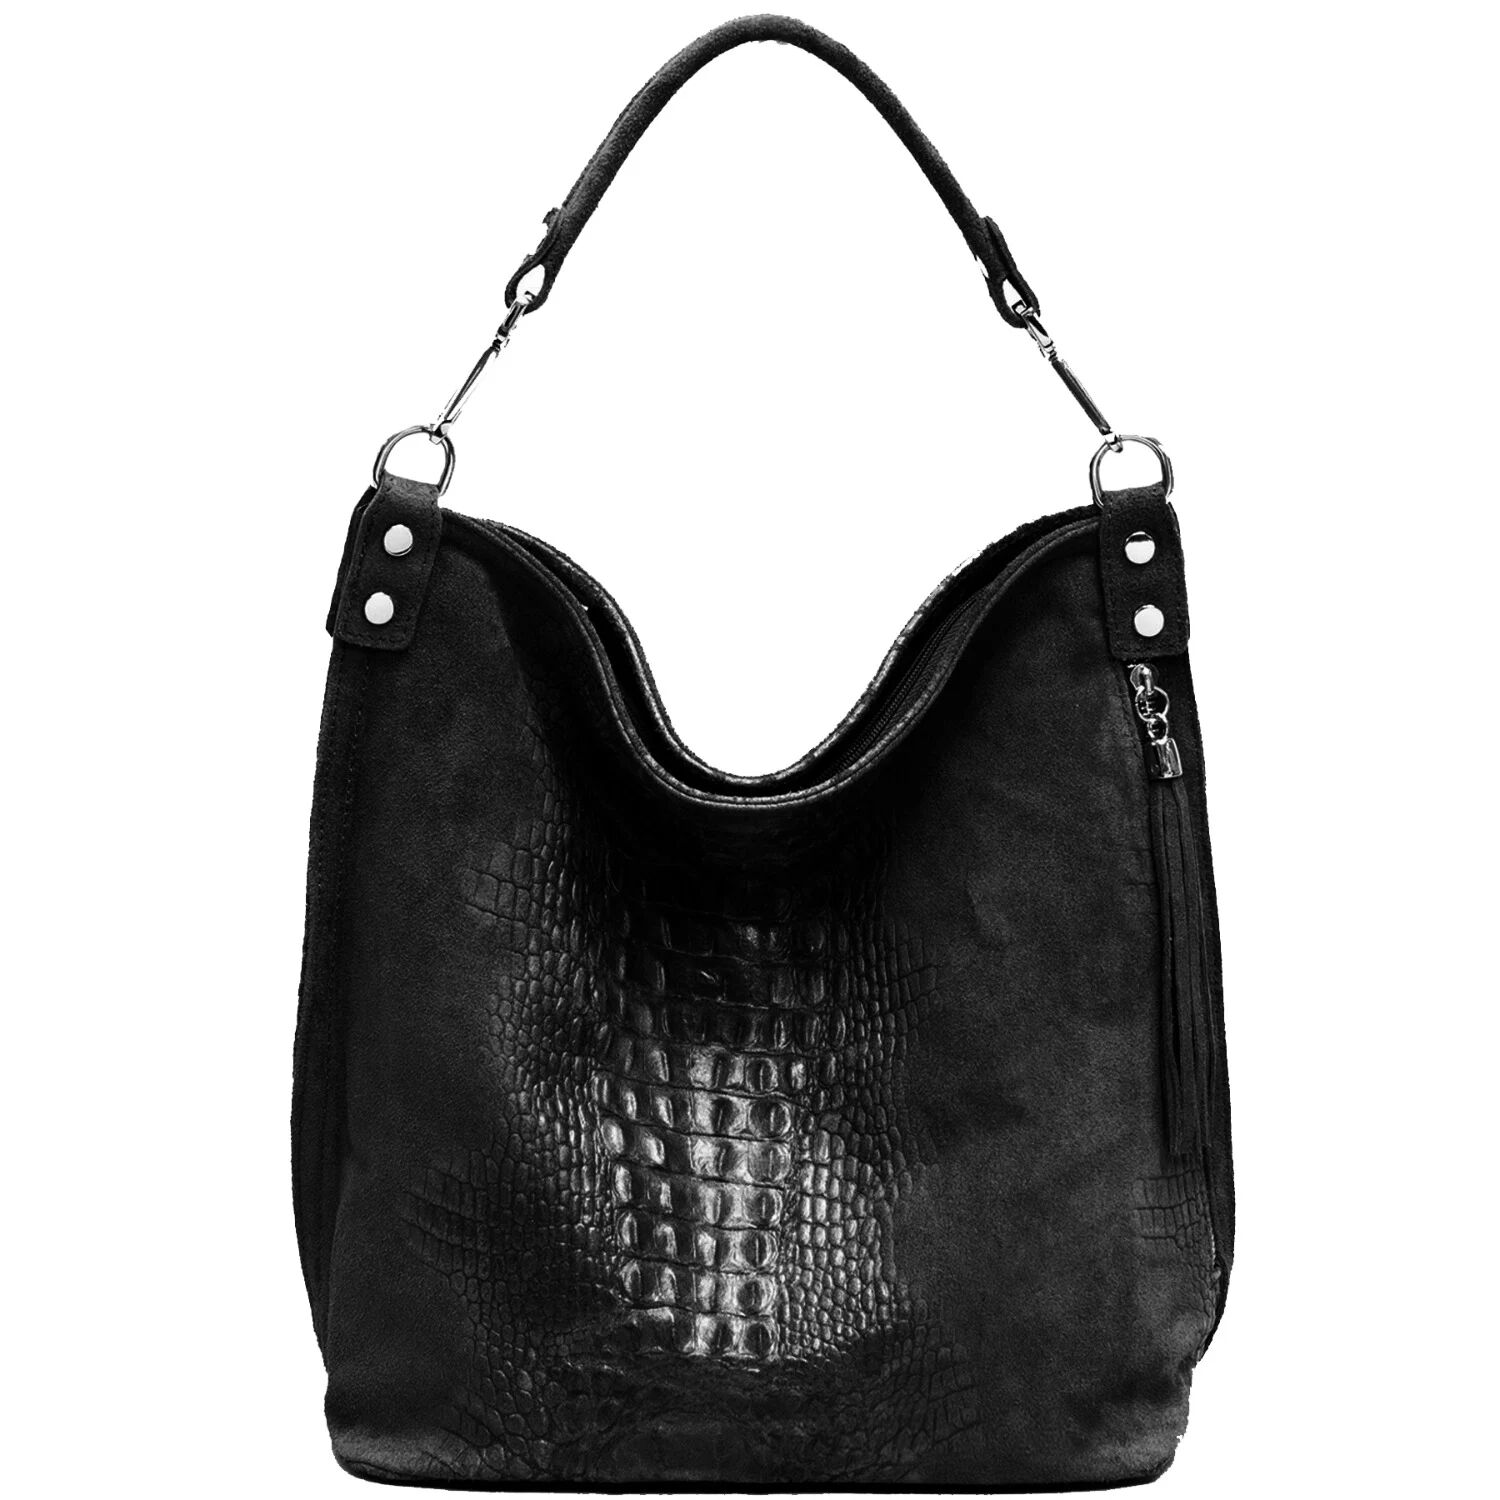 Sostter - Black Croc Suede Leather Hobo Shoulder Bag Bxyre - female